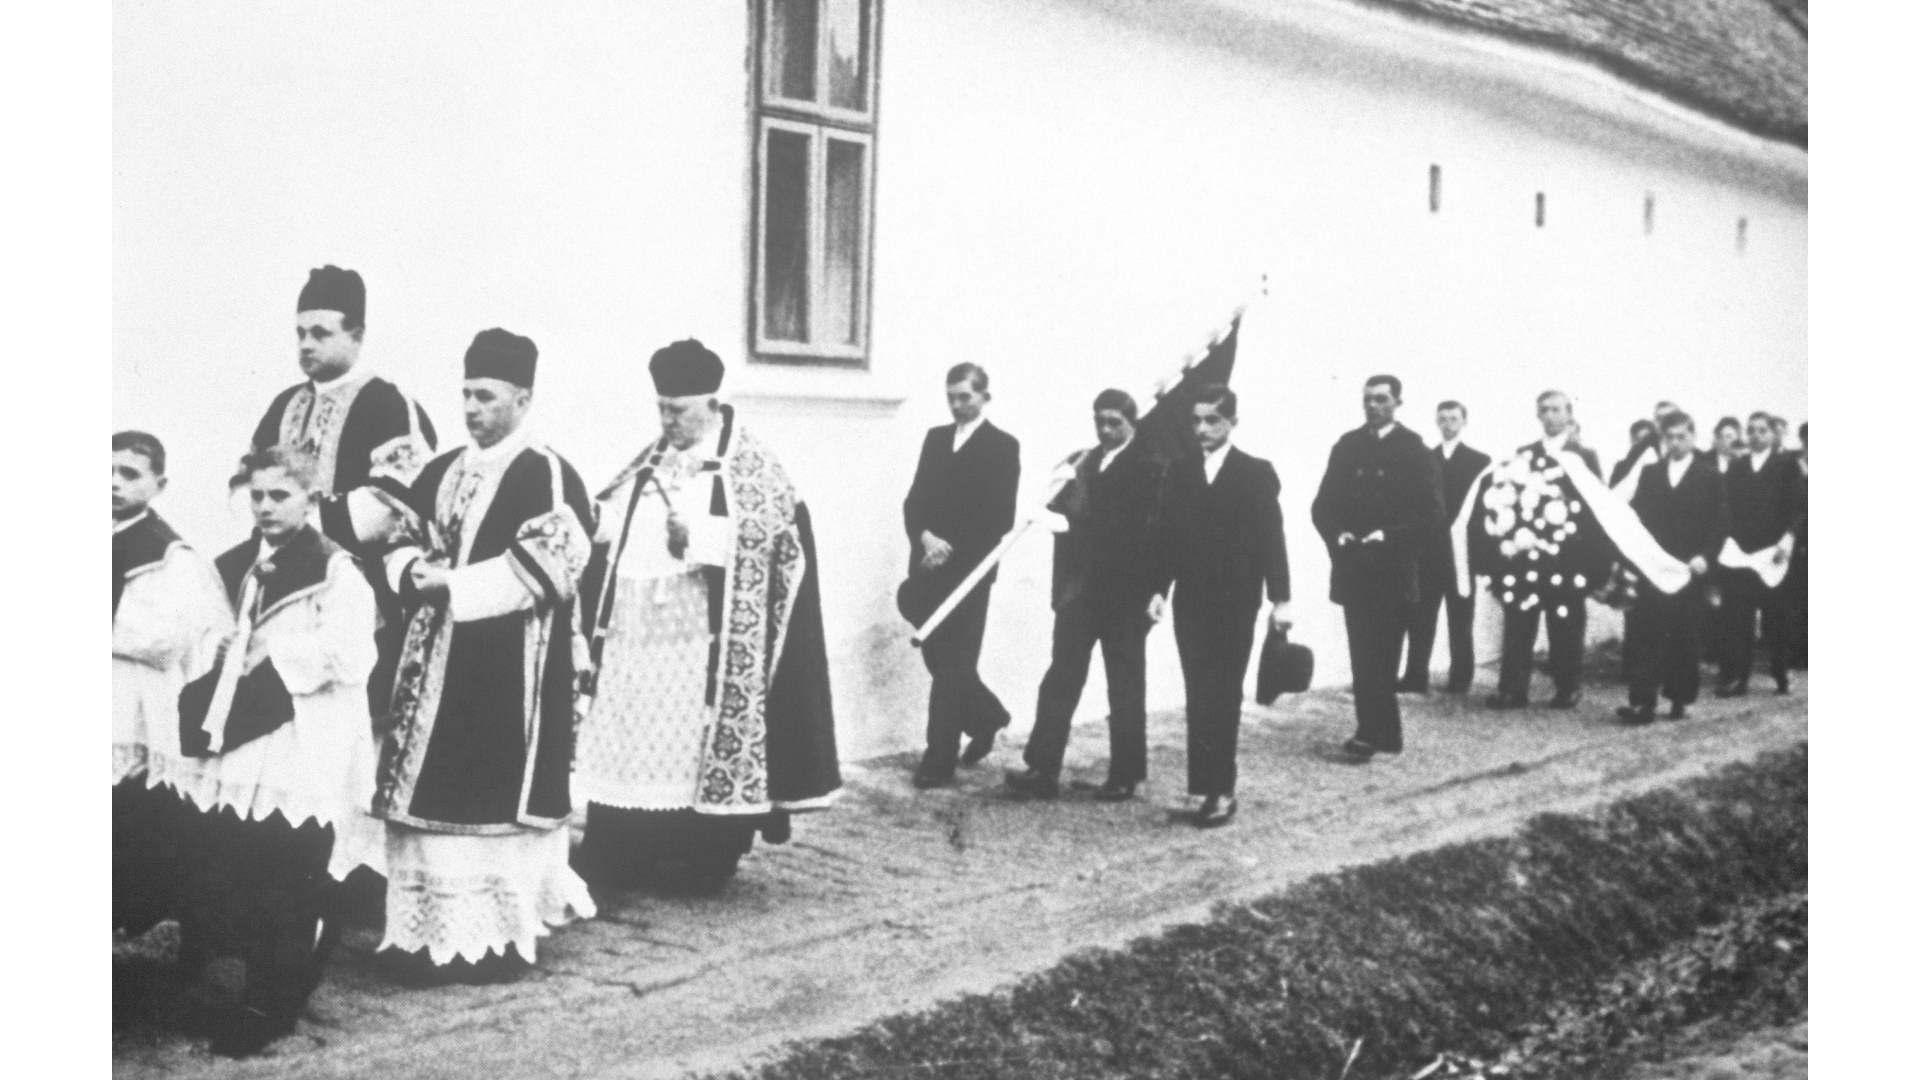 Beerdigung in den 1930er Jahren mit Pfarrer Peter Müller. Foto: Archiv Freundeskreis Filipowa